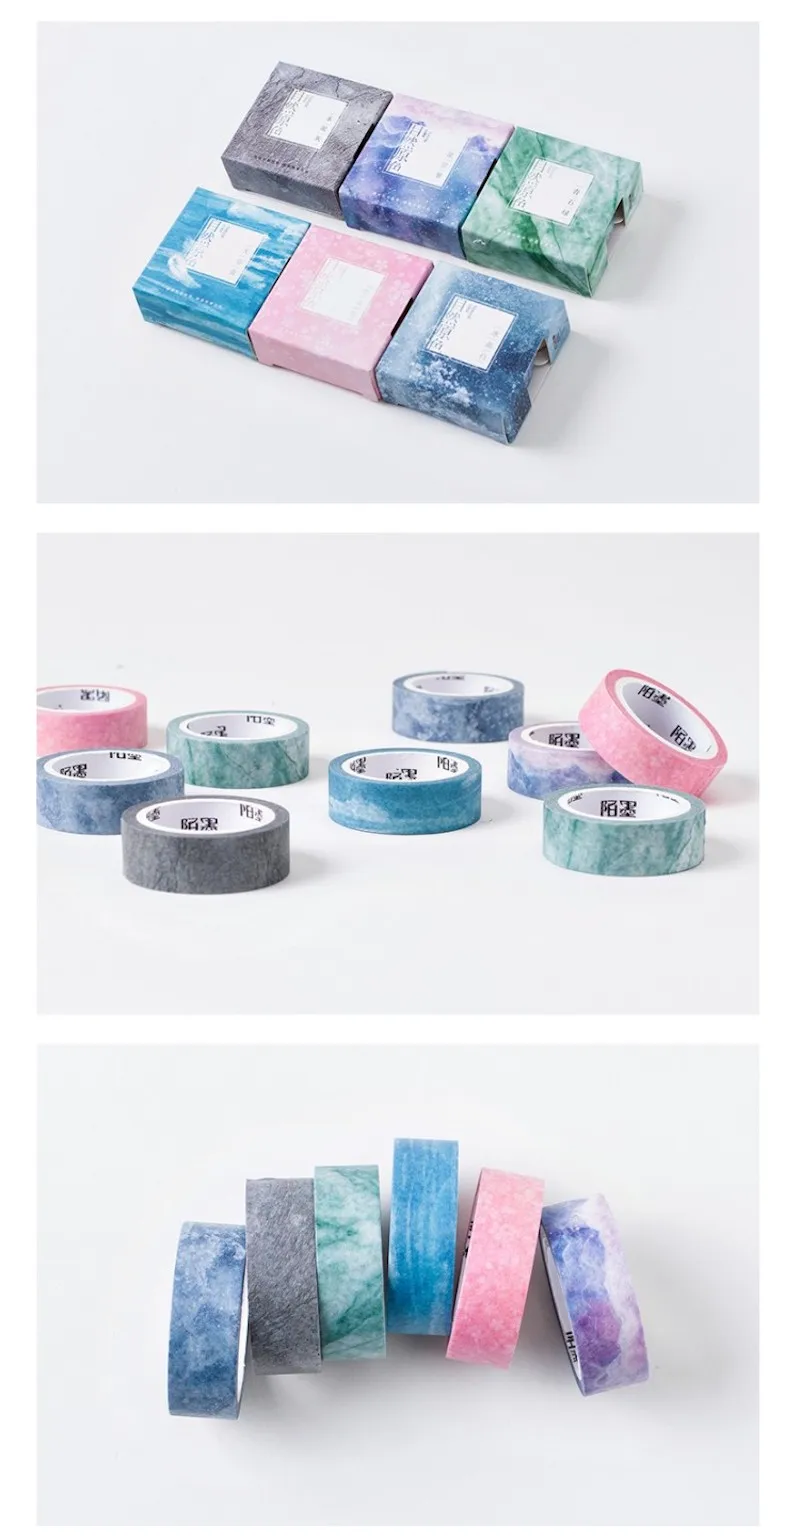 15 мм мечтательный красивый Васи клейкие ленты для девочек подарок DIY декоративные клей маскирования клейкие ленты наклейки Скрапбукинг